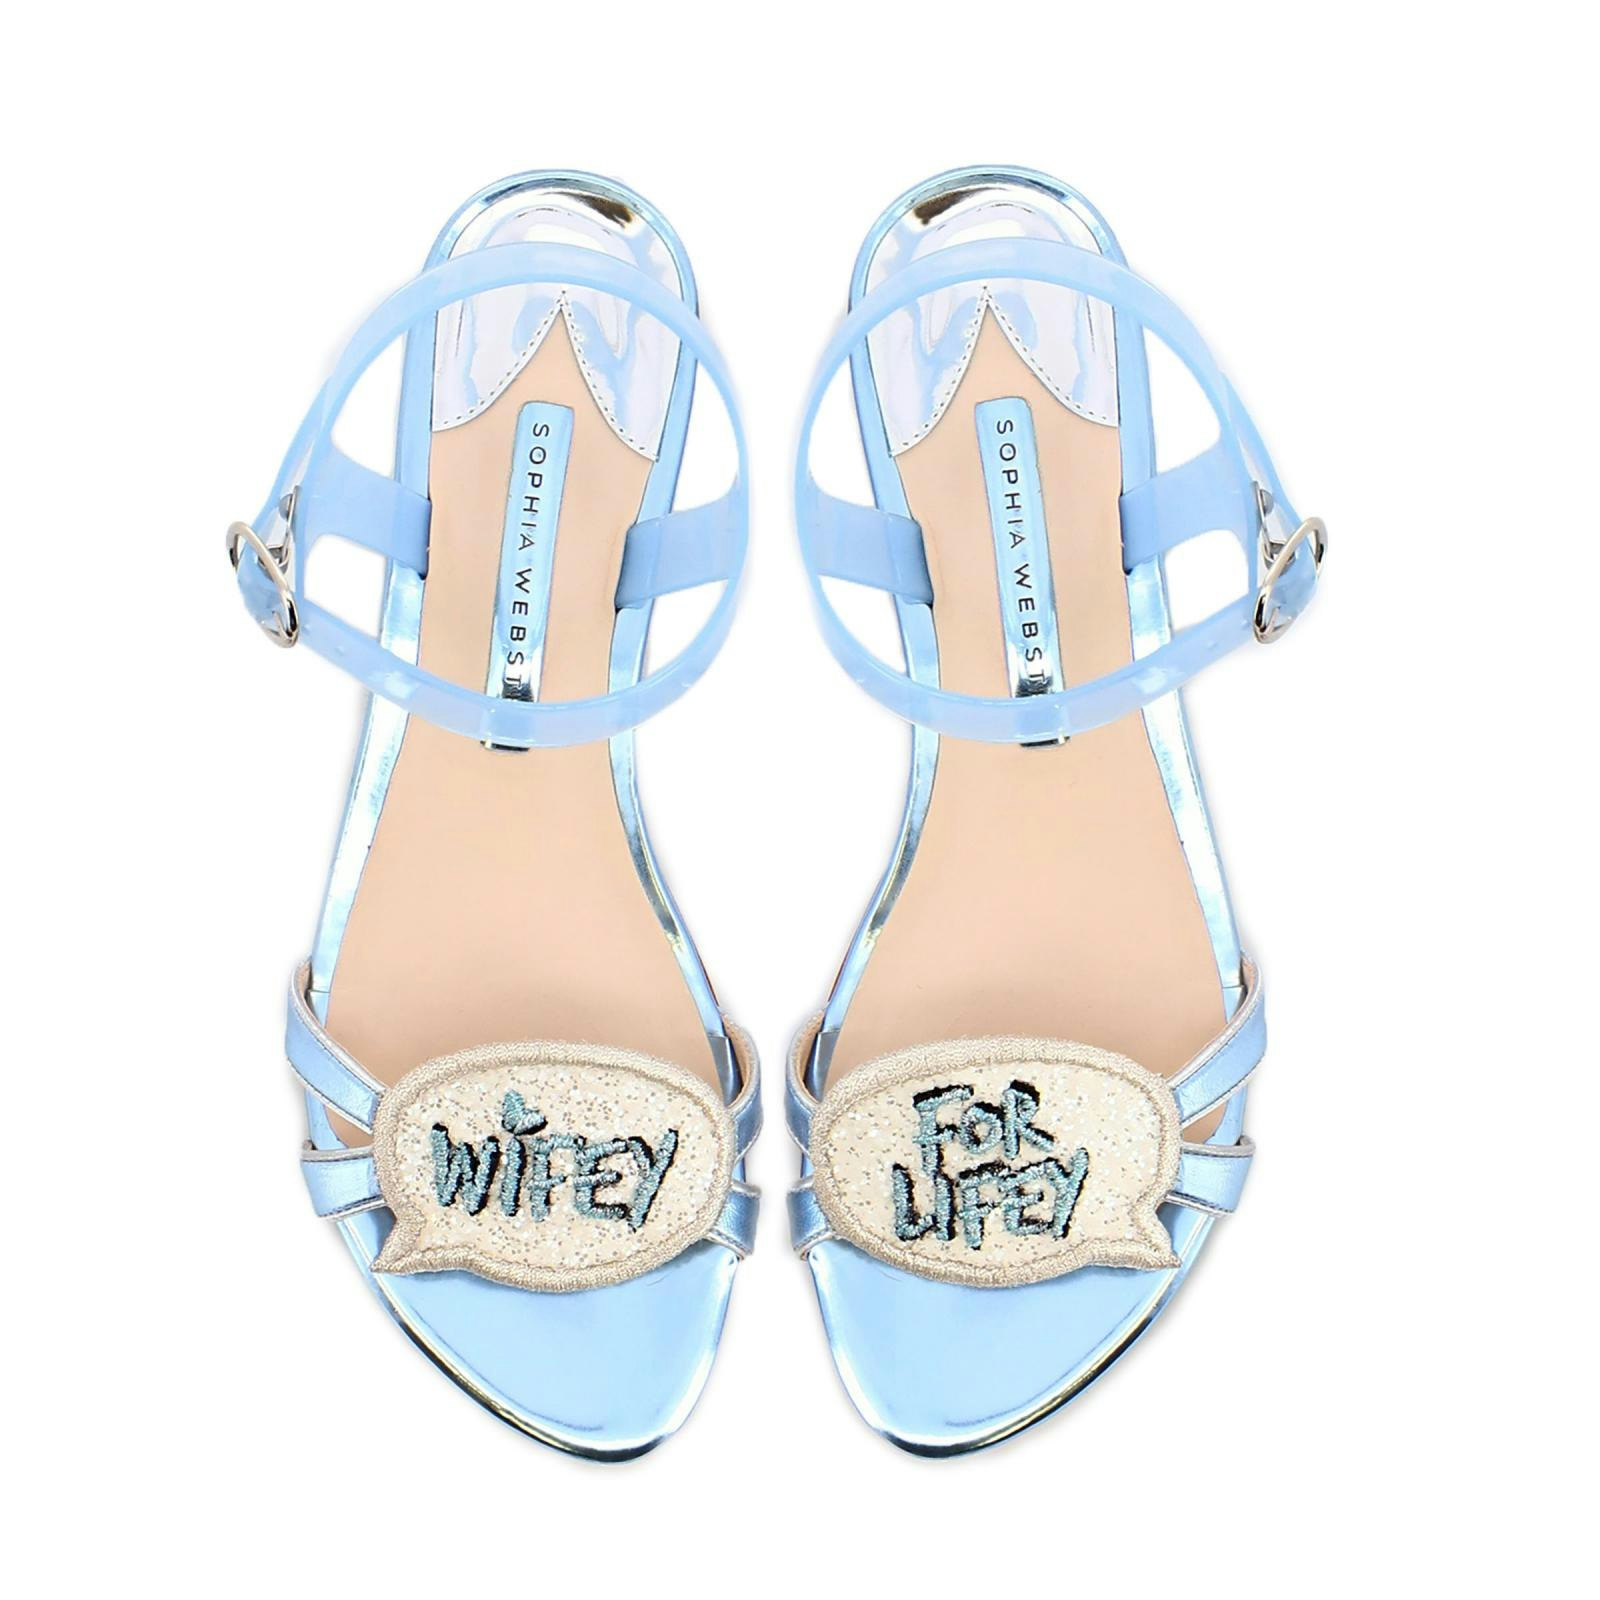 Blue wedding sandals 